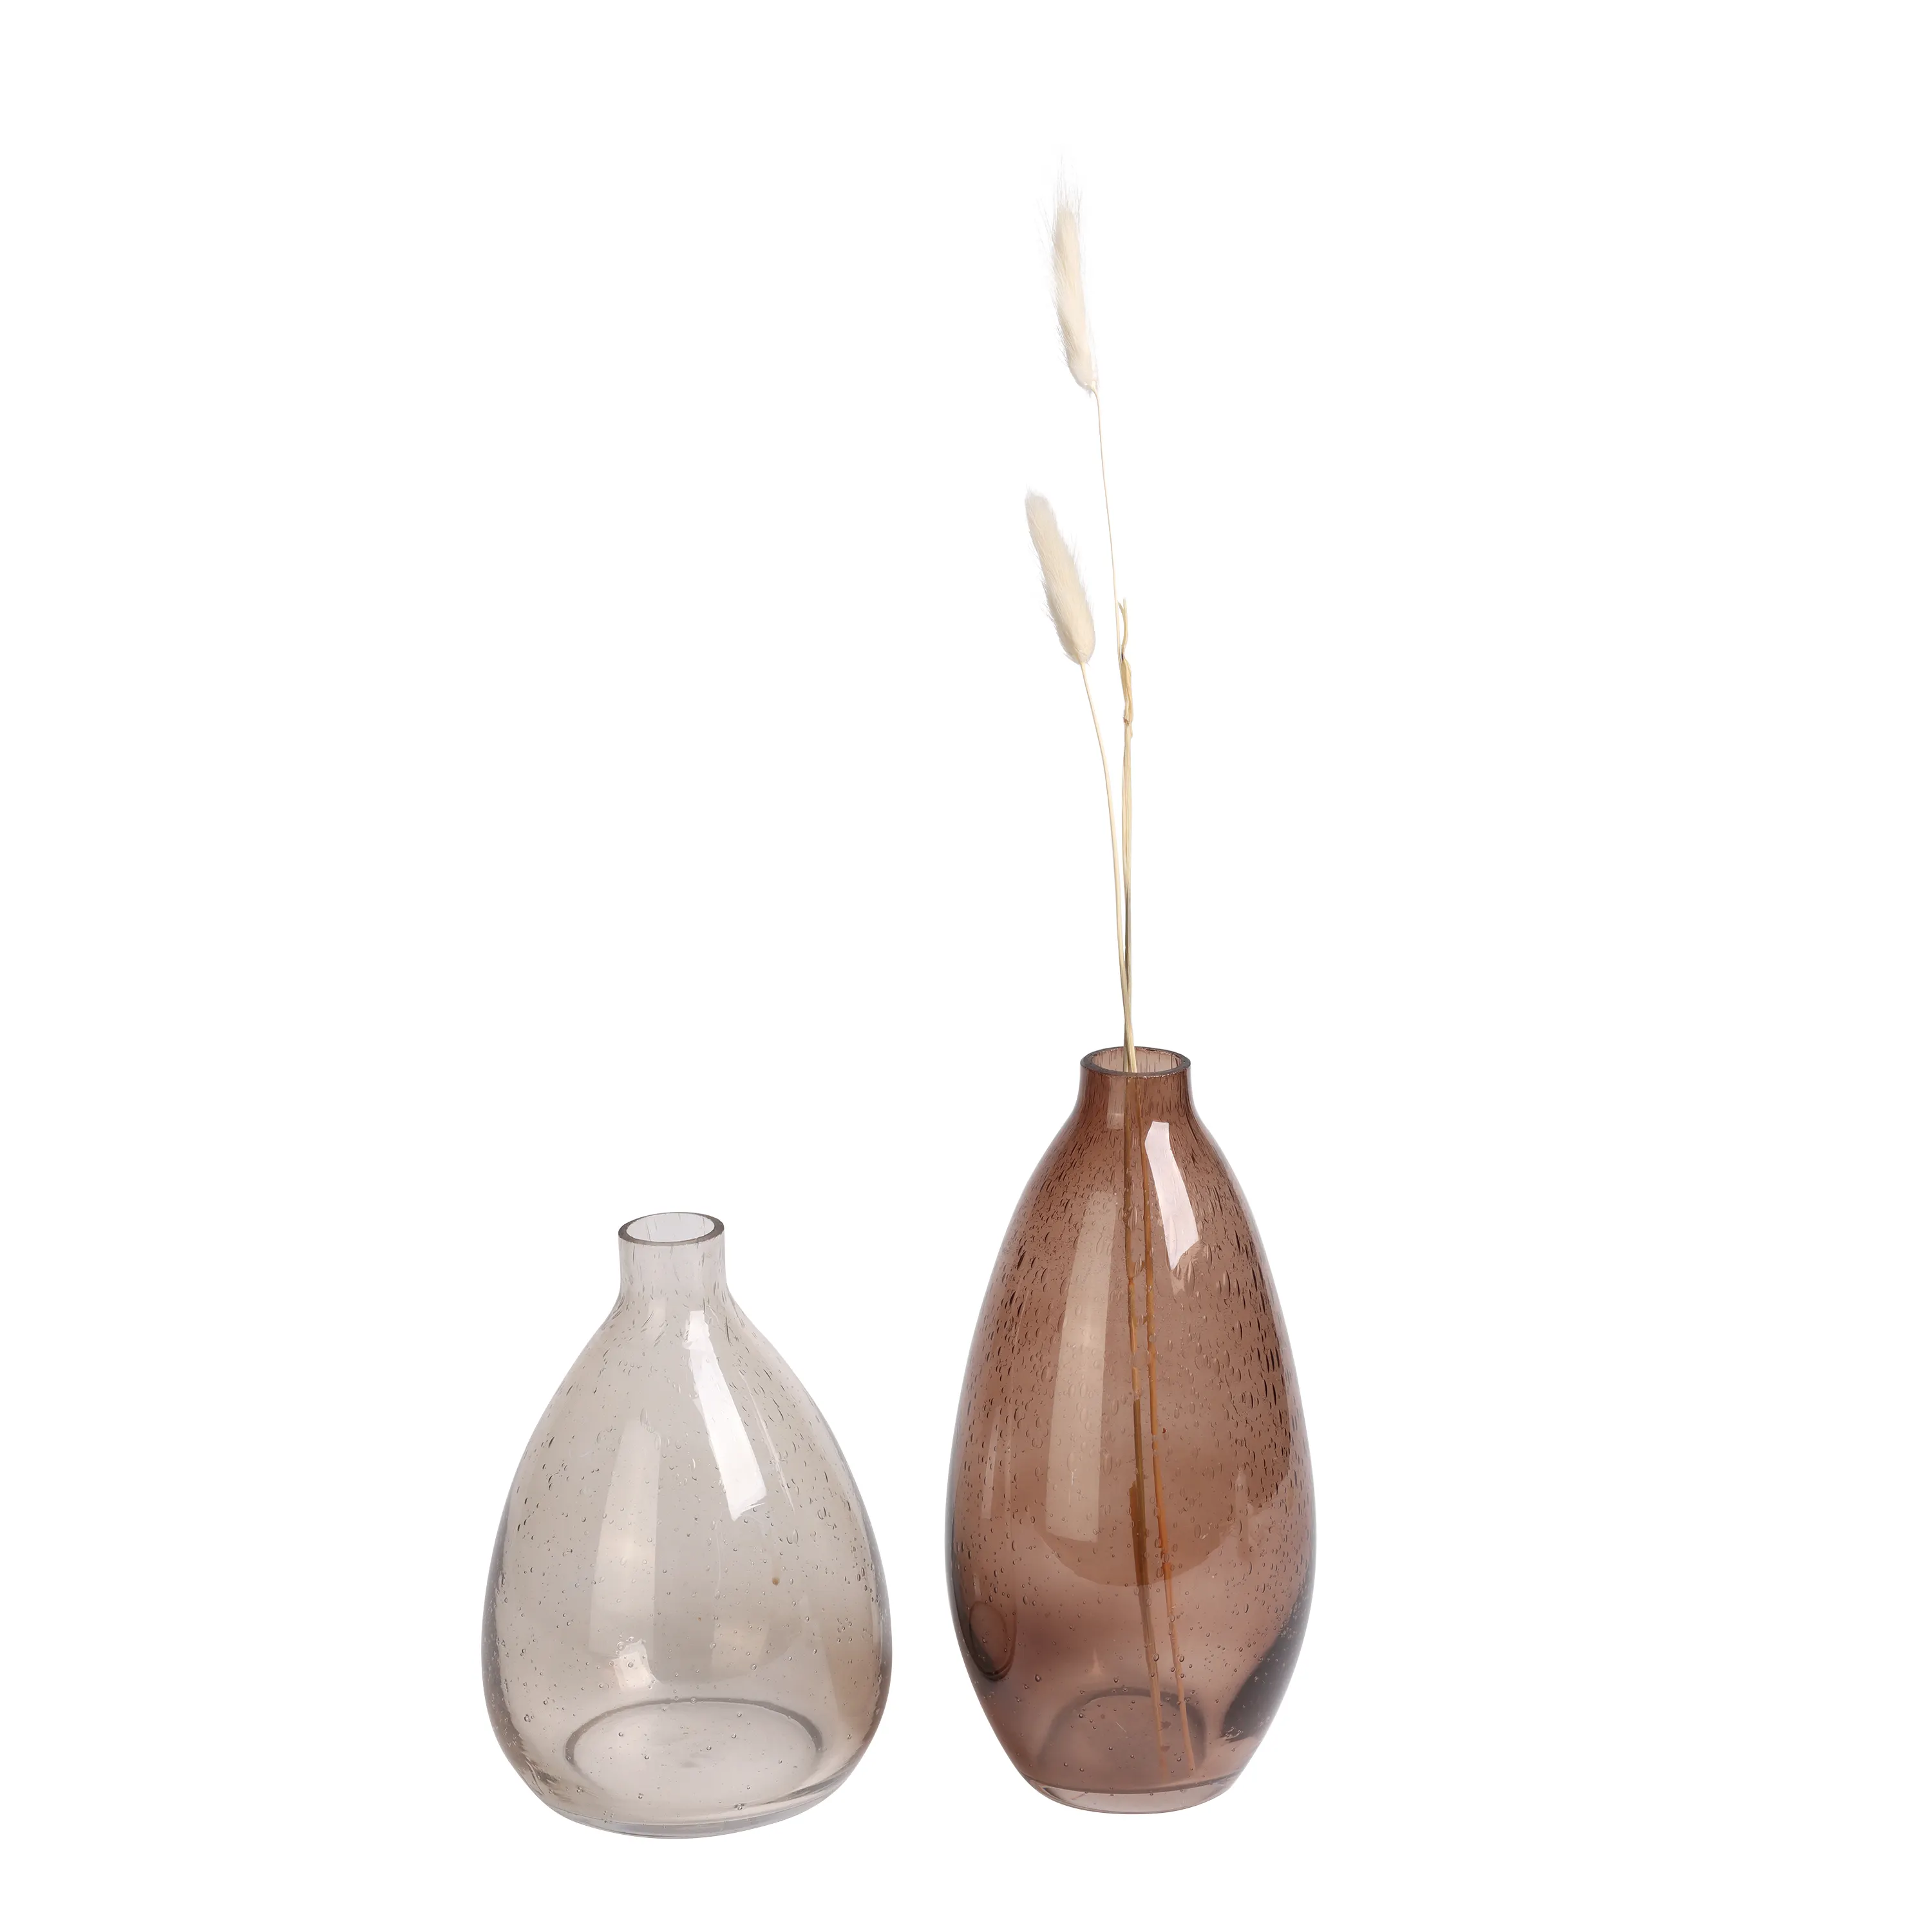 K&B long stem art glass flower pot vase transparent elegant glass vase for desktop